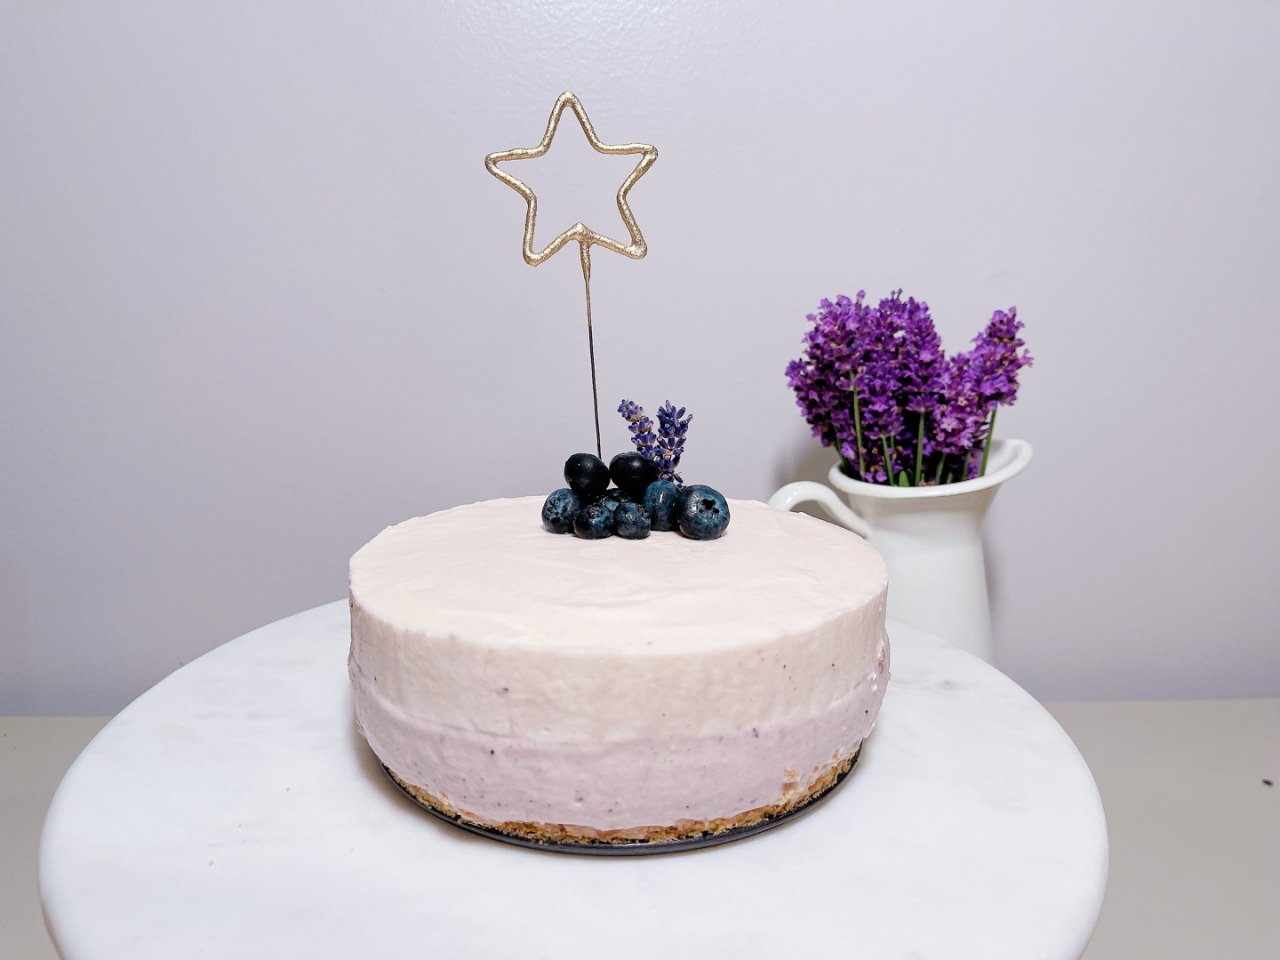 蓝莓酸奶慕斯生日蛋糕🍰...